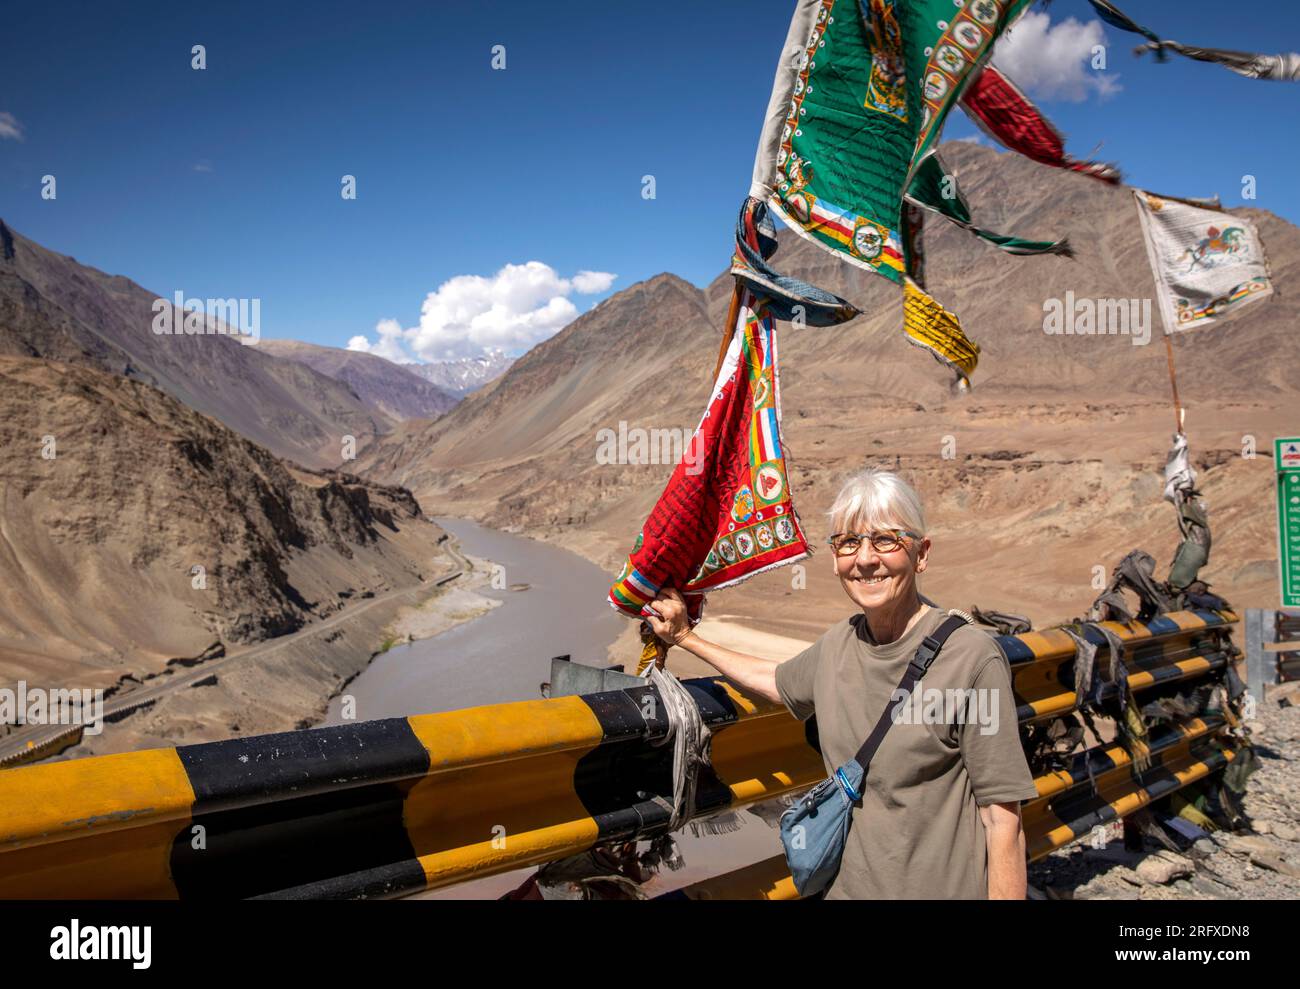 Indien, J&K, Ladakh, Sangam, weibliche Seniorin unter buddhistischer Flagge am Zusammenfluss der Flüsse Indus und Zanskar Stockfoto